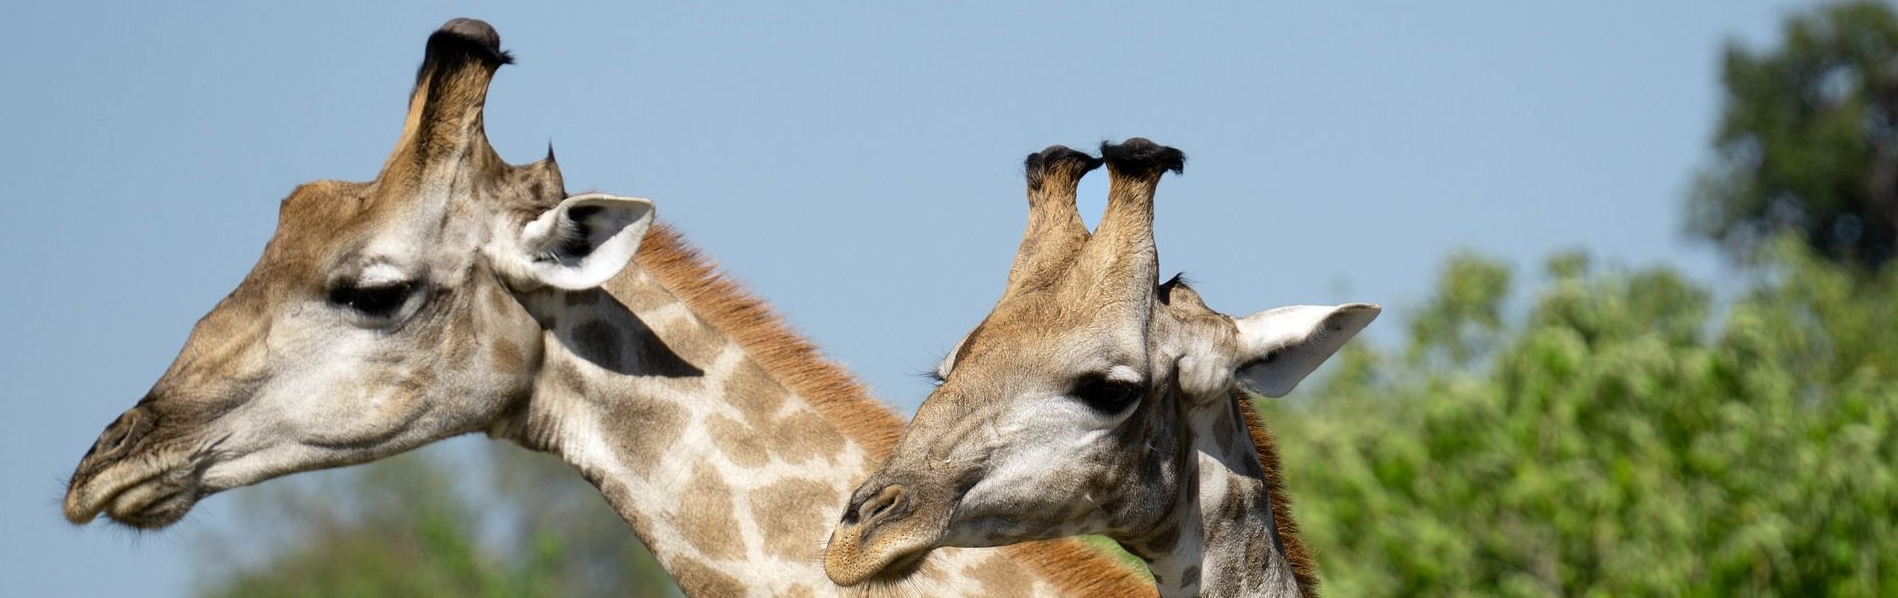 simbabwe-Giraffe-g1c0deb4ca_1920-Pixabay.jpg